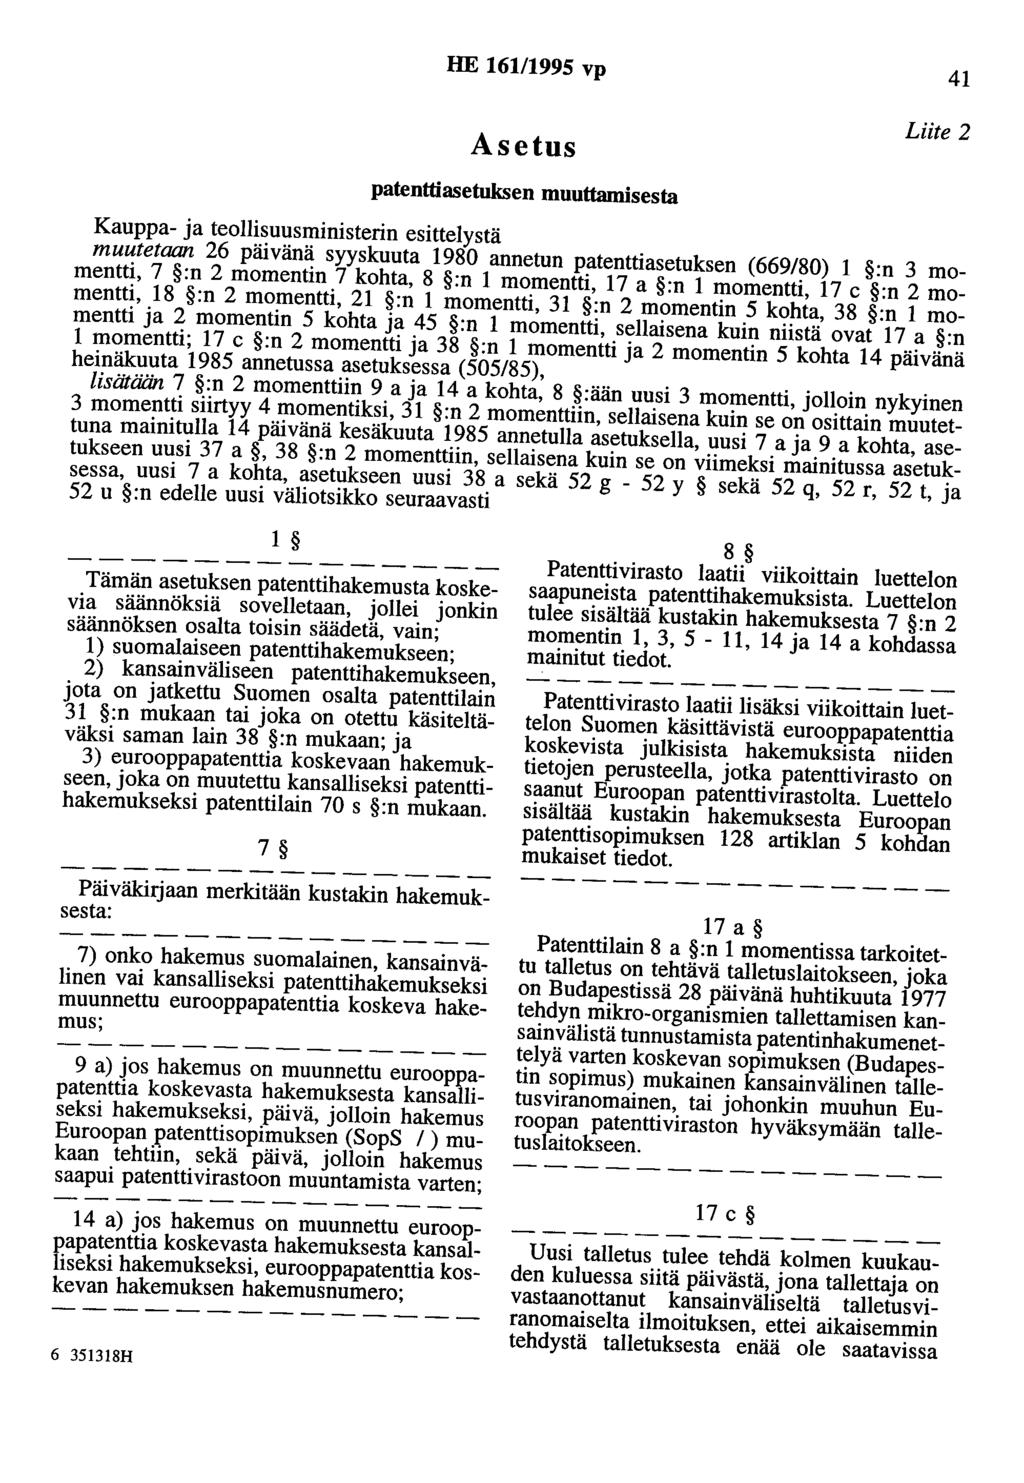 HE 161/1995 vp 41 Asetus patenttiasetuksen muuttamisesta Liite 2 Kauppa- ja teollisuusministerin esittelystä muutetaan 26 päivänä syyskuuta 1980 annetun patenttiasetuksen (669/80) 1 :n 3 momentti, 7